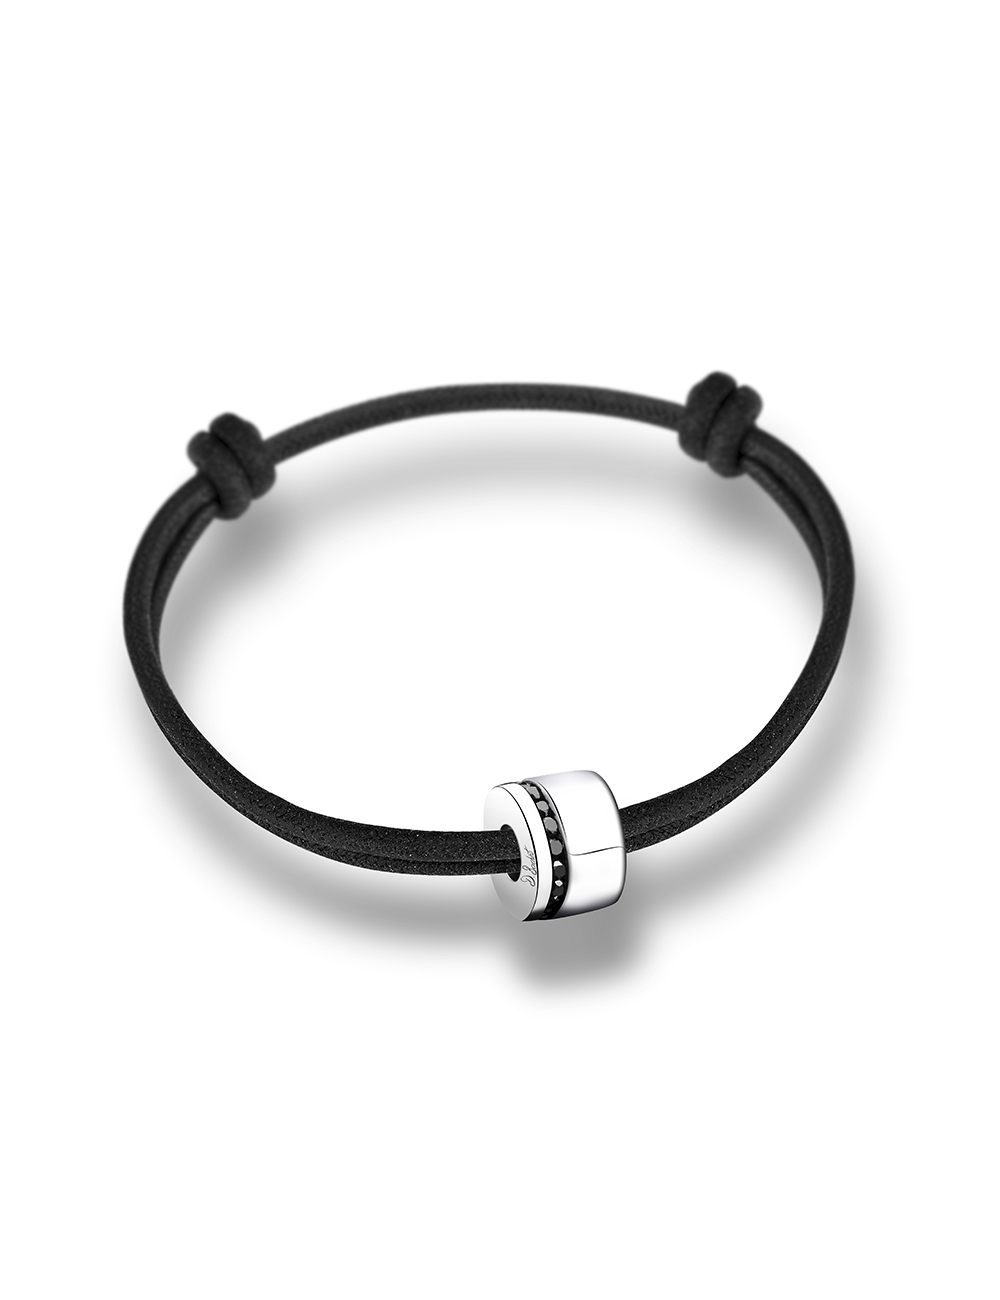 Modern bracelet for men in white gold 18k and an offset line of black diamonds easily adjustable